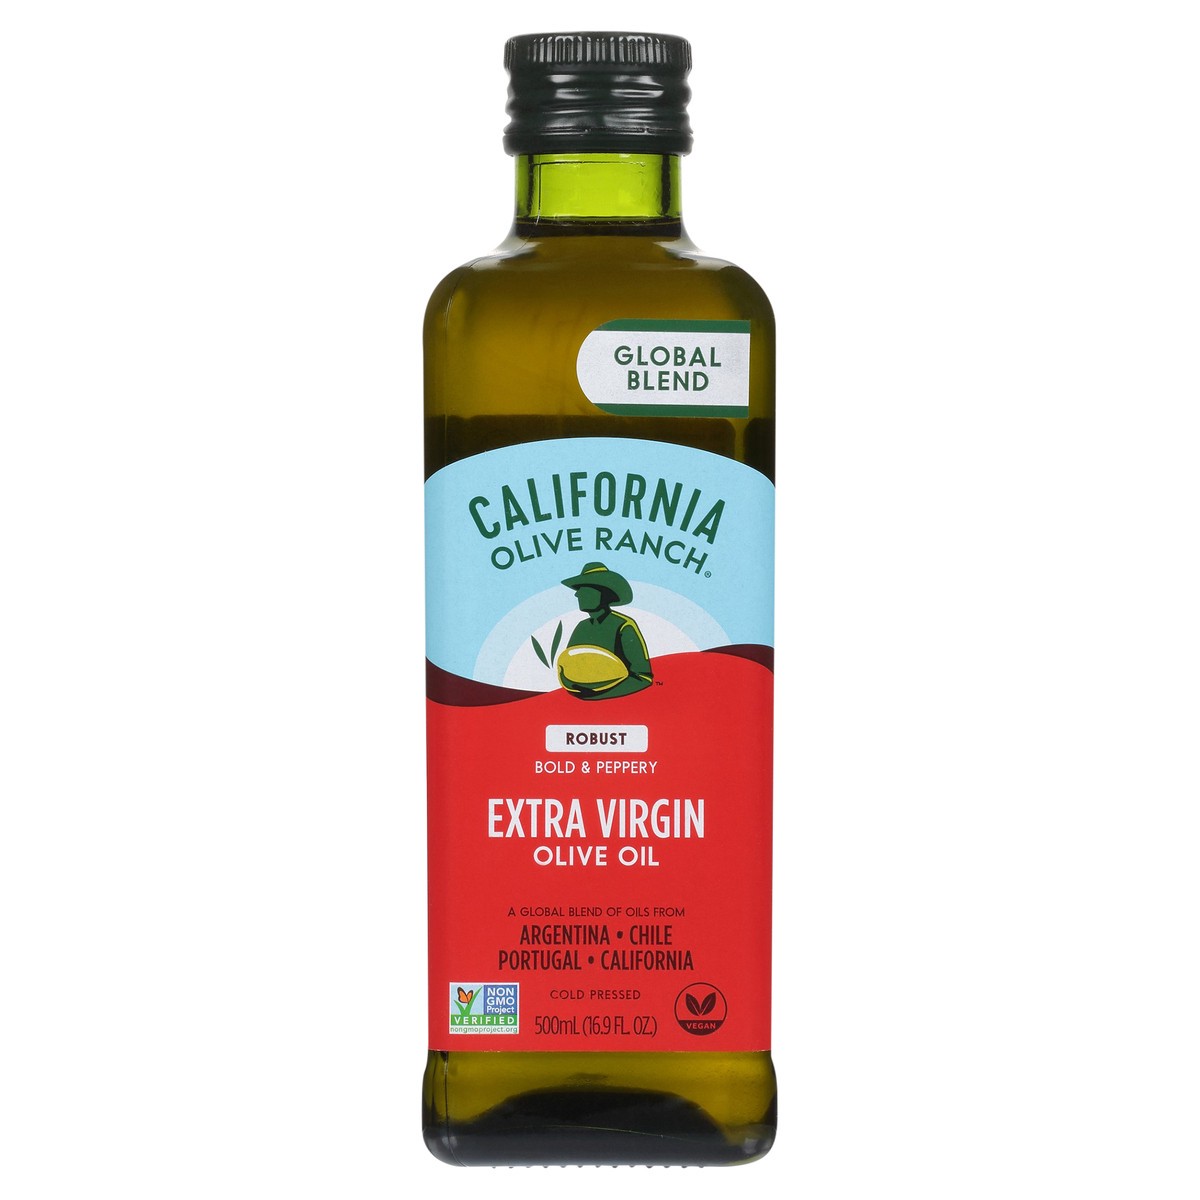 slide 7 of 14, California Olive Ranch Global Blend Robust Extra Virgin Olive Oil 16.9 fl. oz. Bottle, 16.9 fl oz